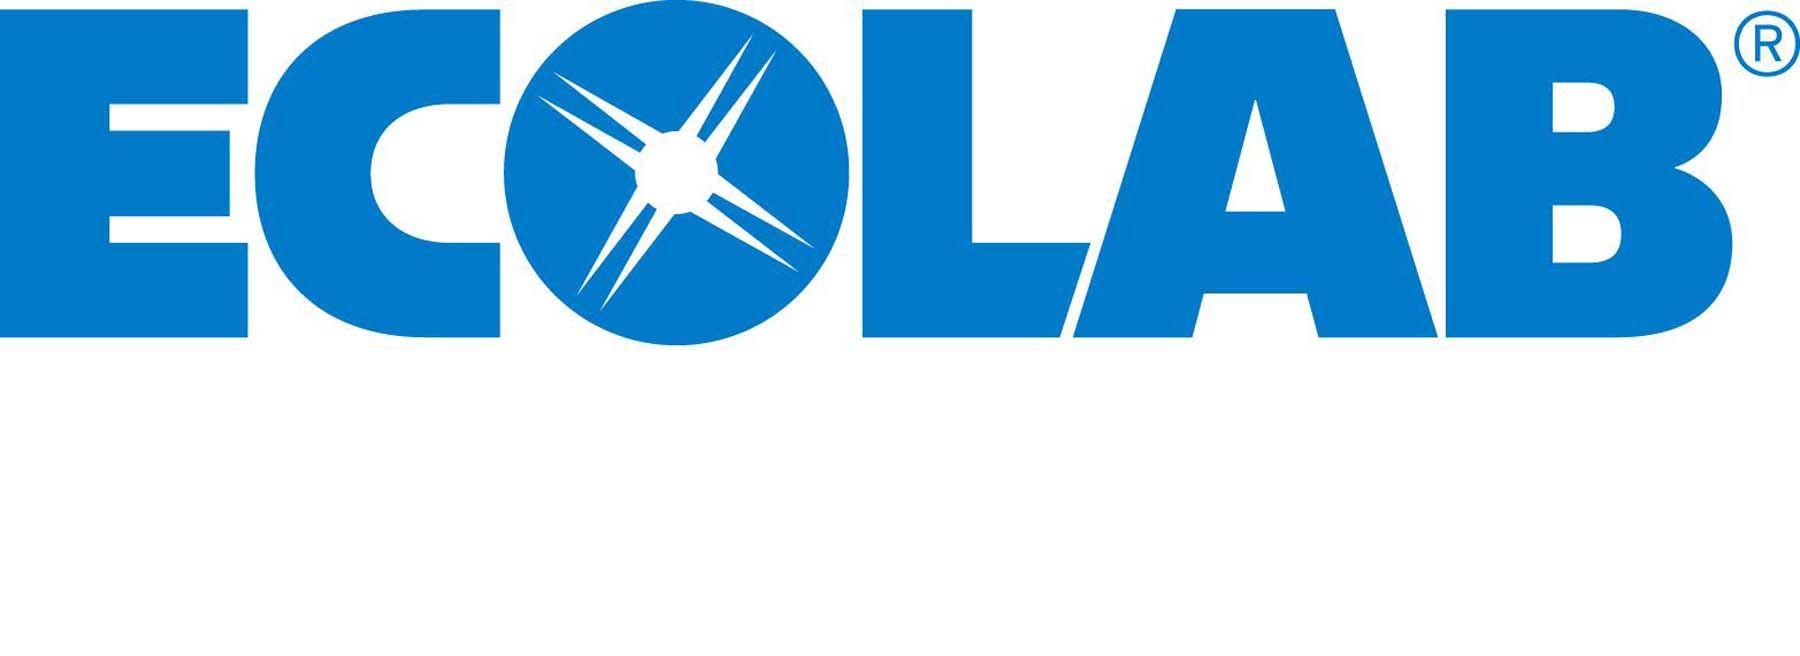 Ecolab Logo - Ecolab-logo-suur – Great River Greening